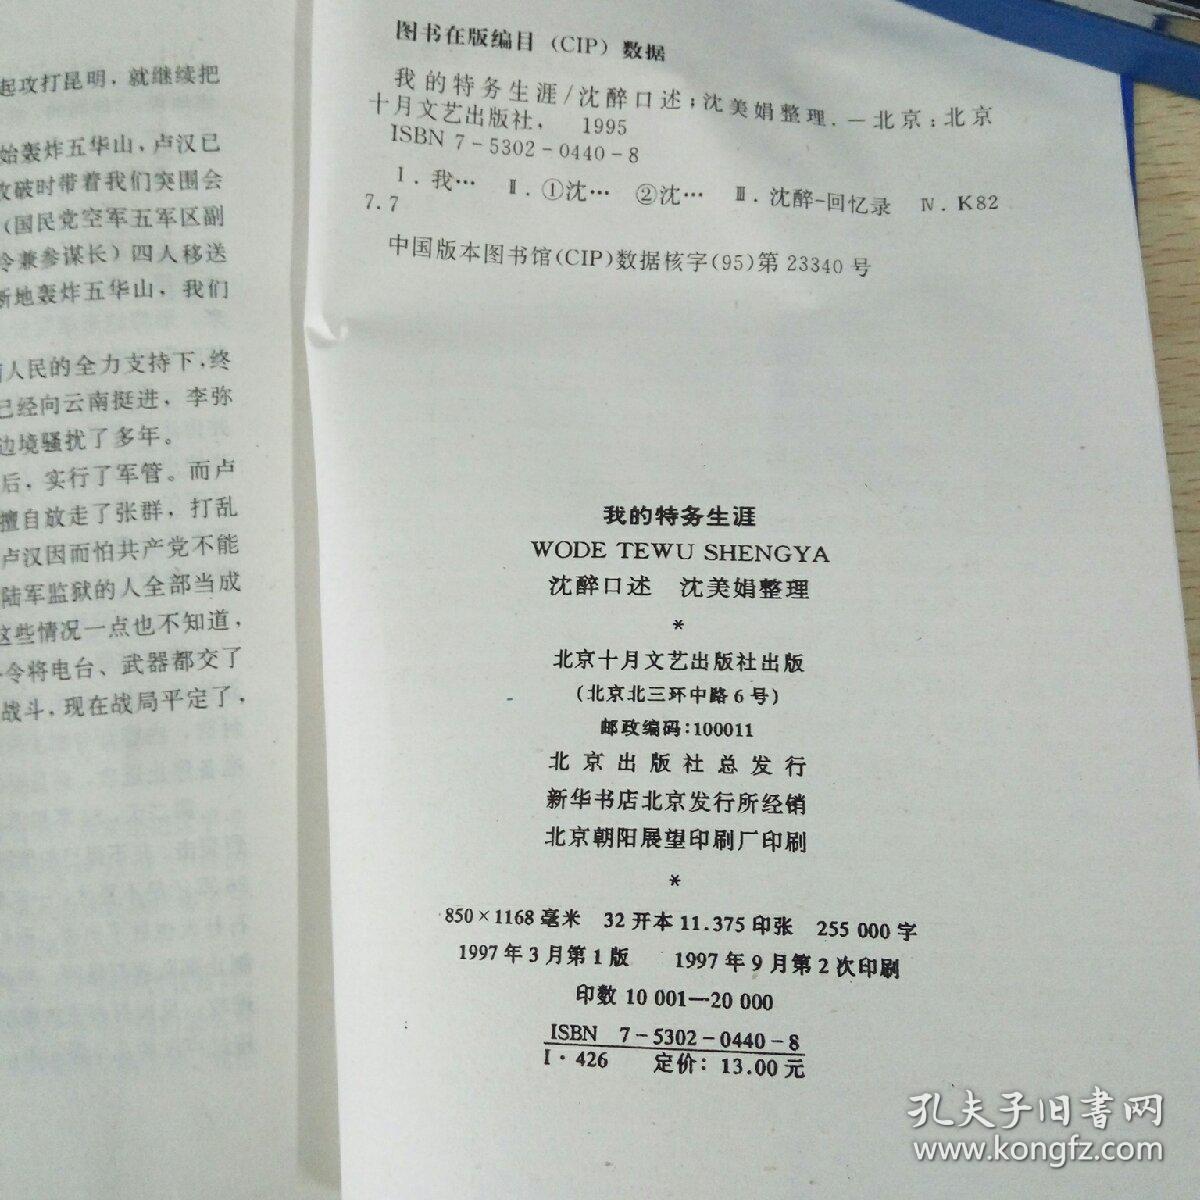 我的特务生涯（沈醉 自述 沈美娟 整理 北京十月文艺出版社 1997-3一版 1997-9 二印）